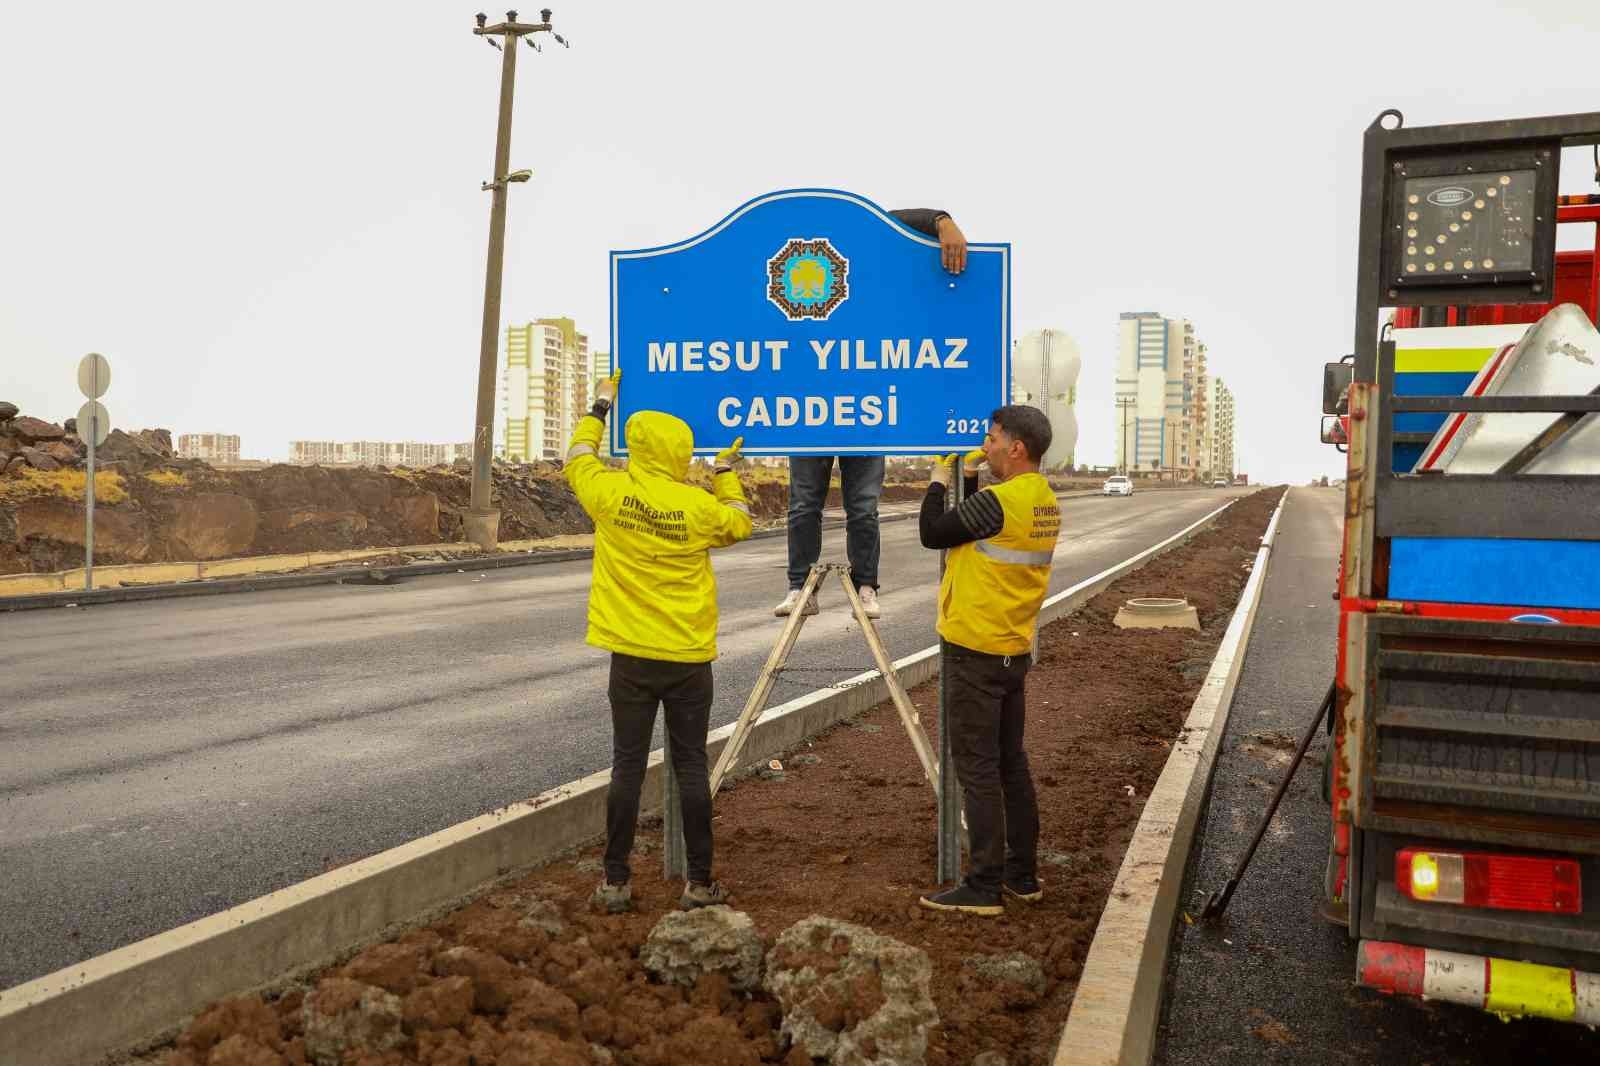 Mesut Yılmaz’ın adı Diyarbakır’da yaşatılacak #diyarbakir